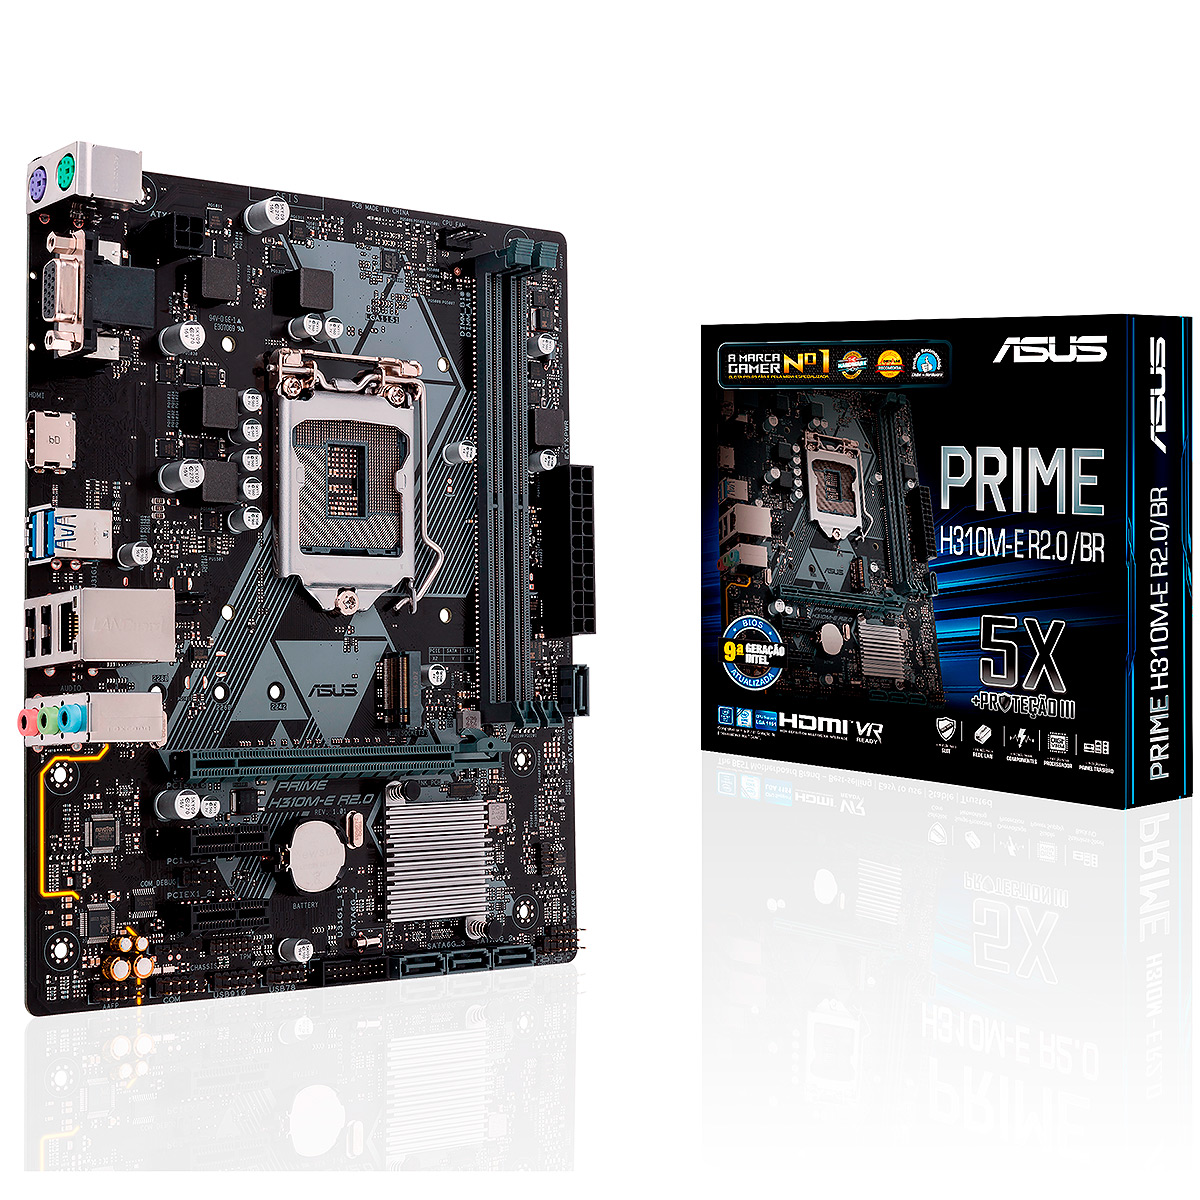 Asus Prime H310M-E R2.0/BR (LGA 1151 - DDR4 2666) Chipset Intel H310 - 9ª Geração Coffee Lake - USB 3.1 - Slots M.2 - Micro ATX